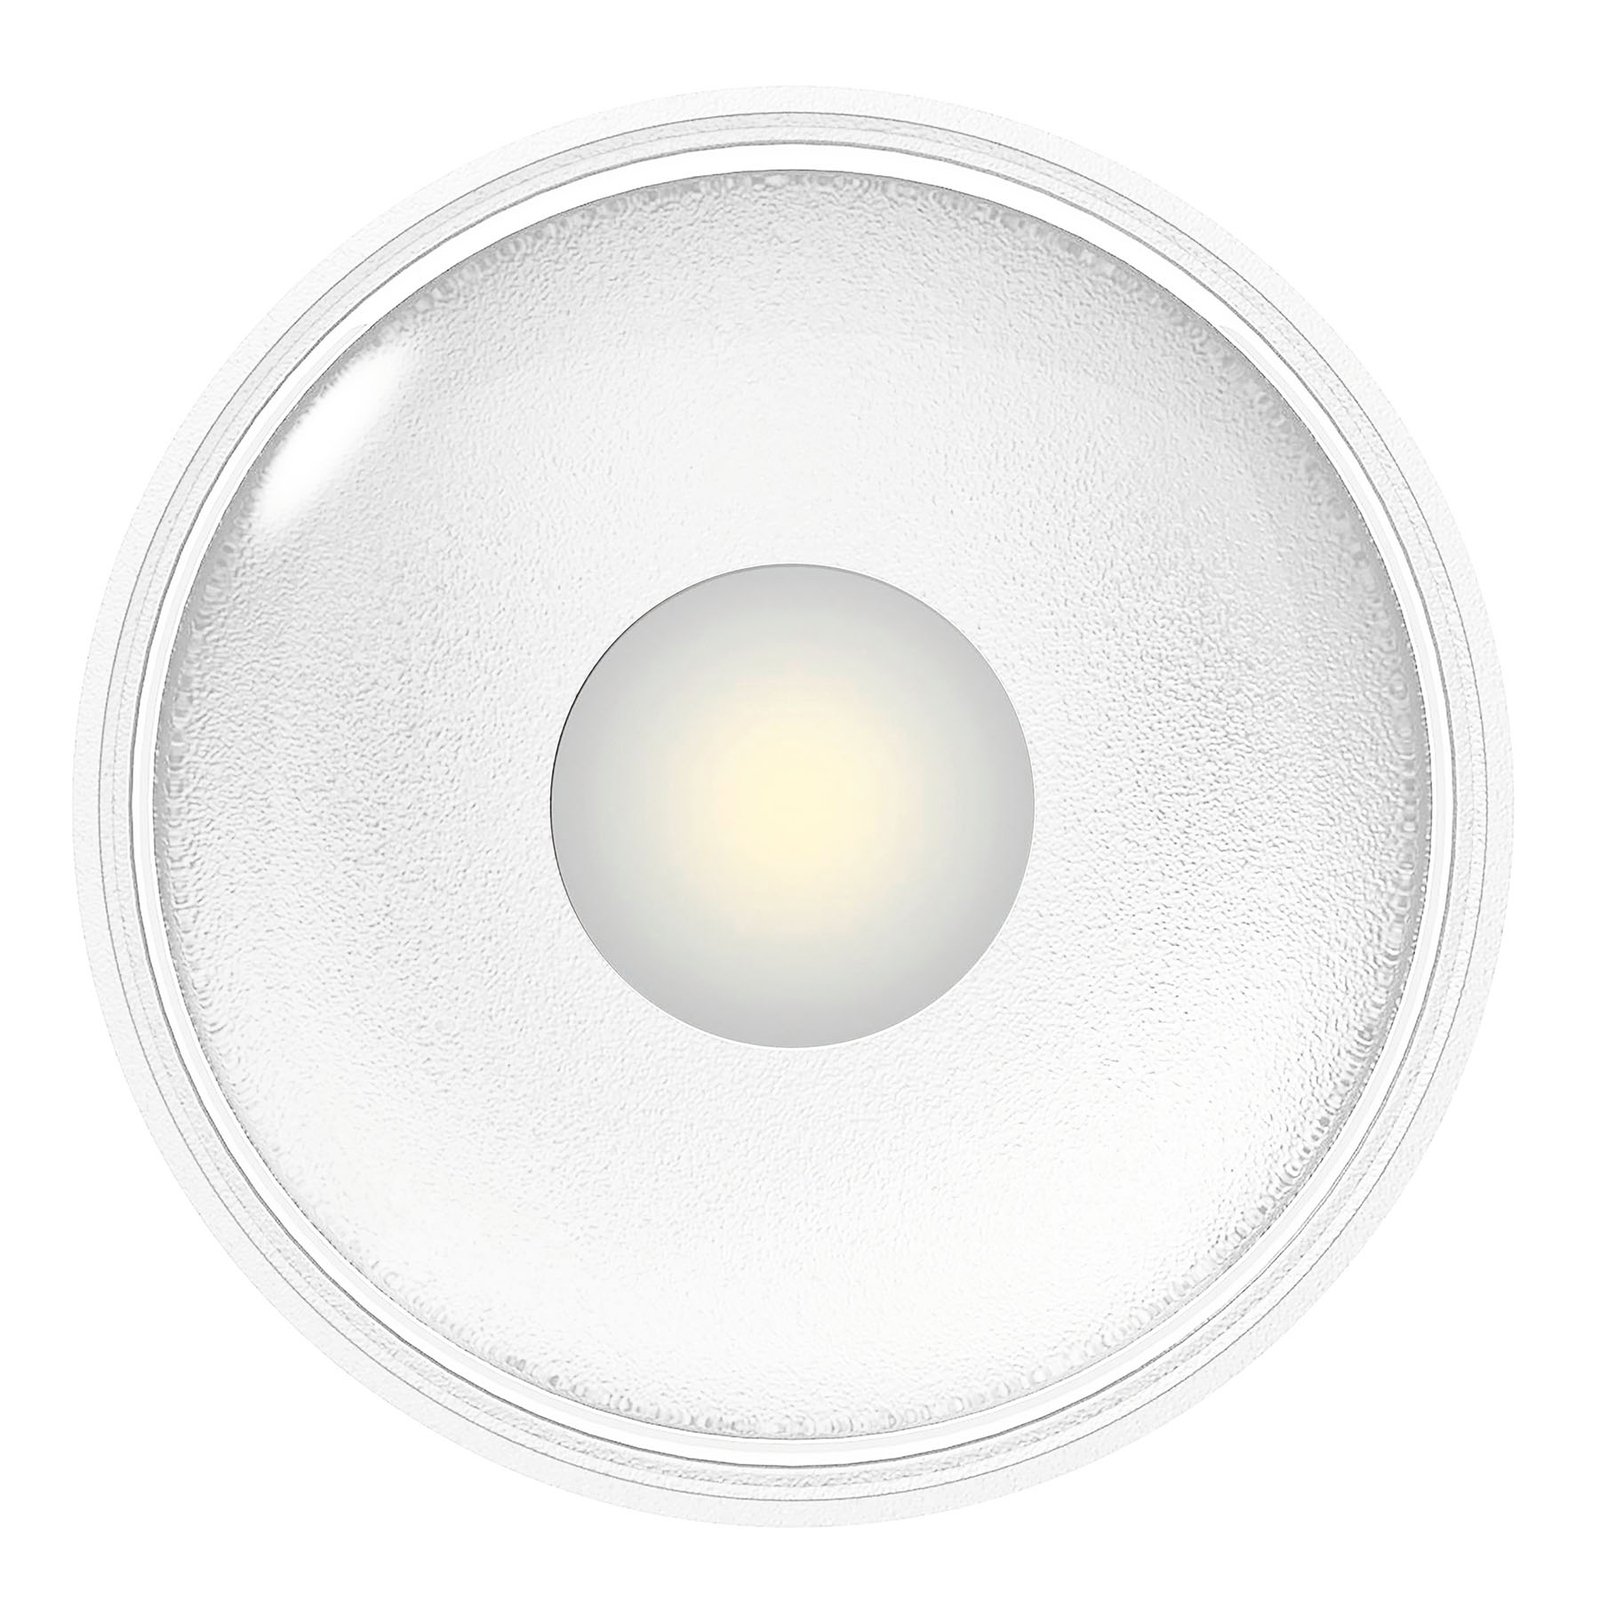 LED outdoor ceiling light Girona, white